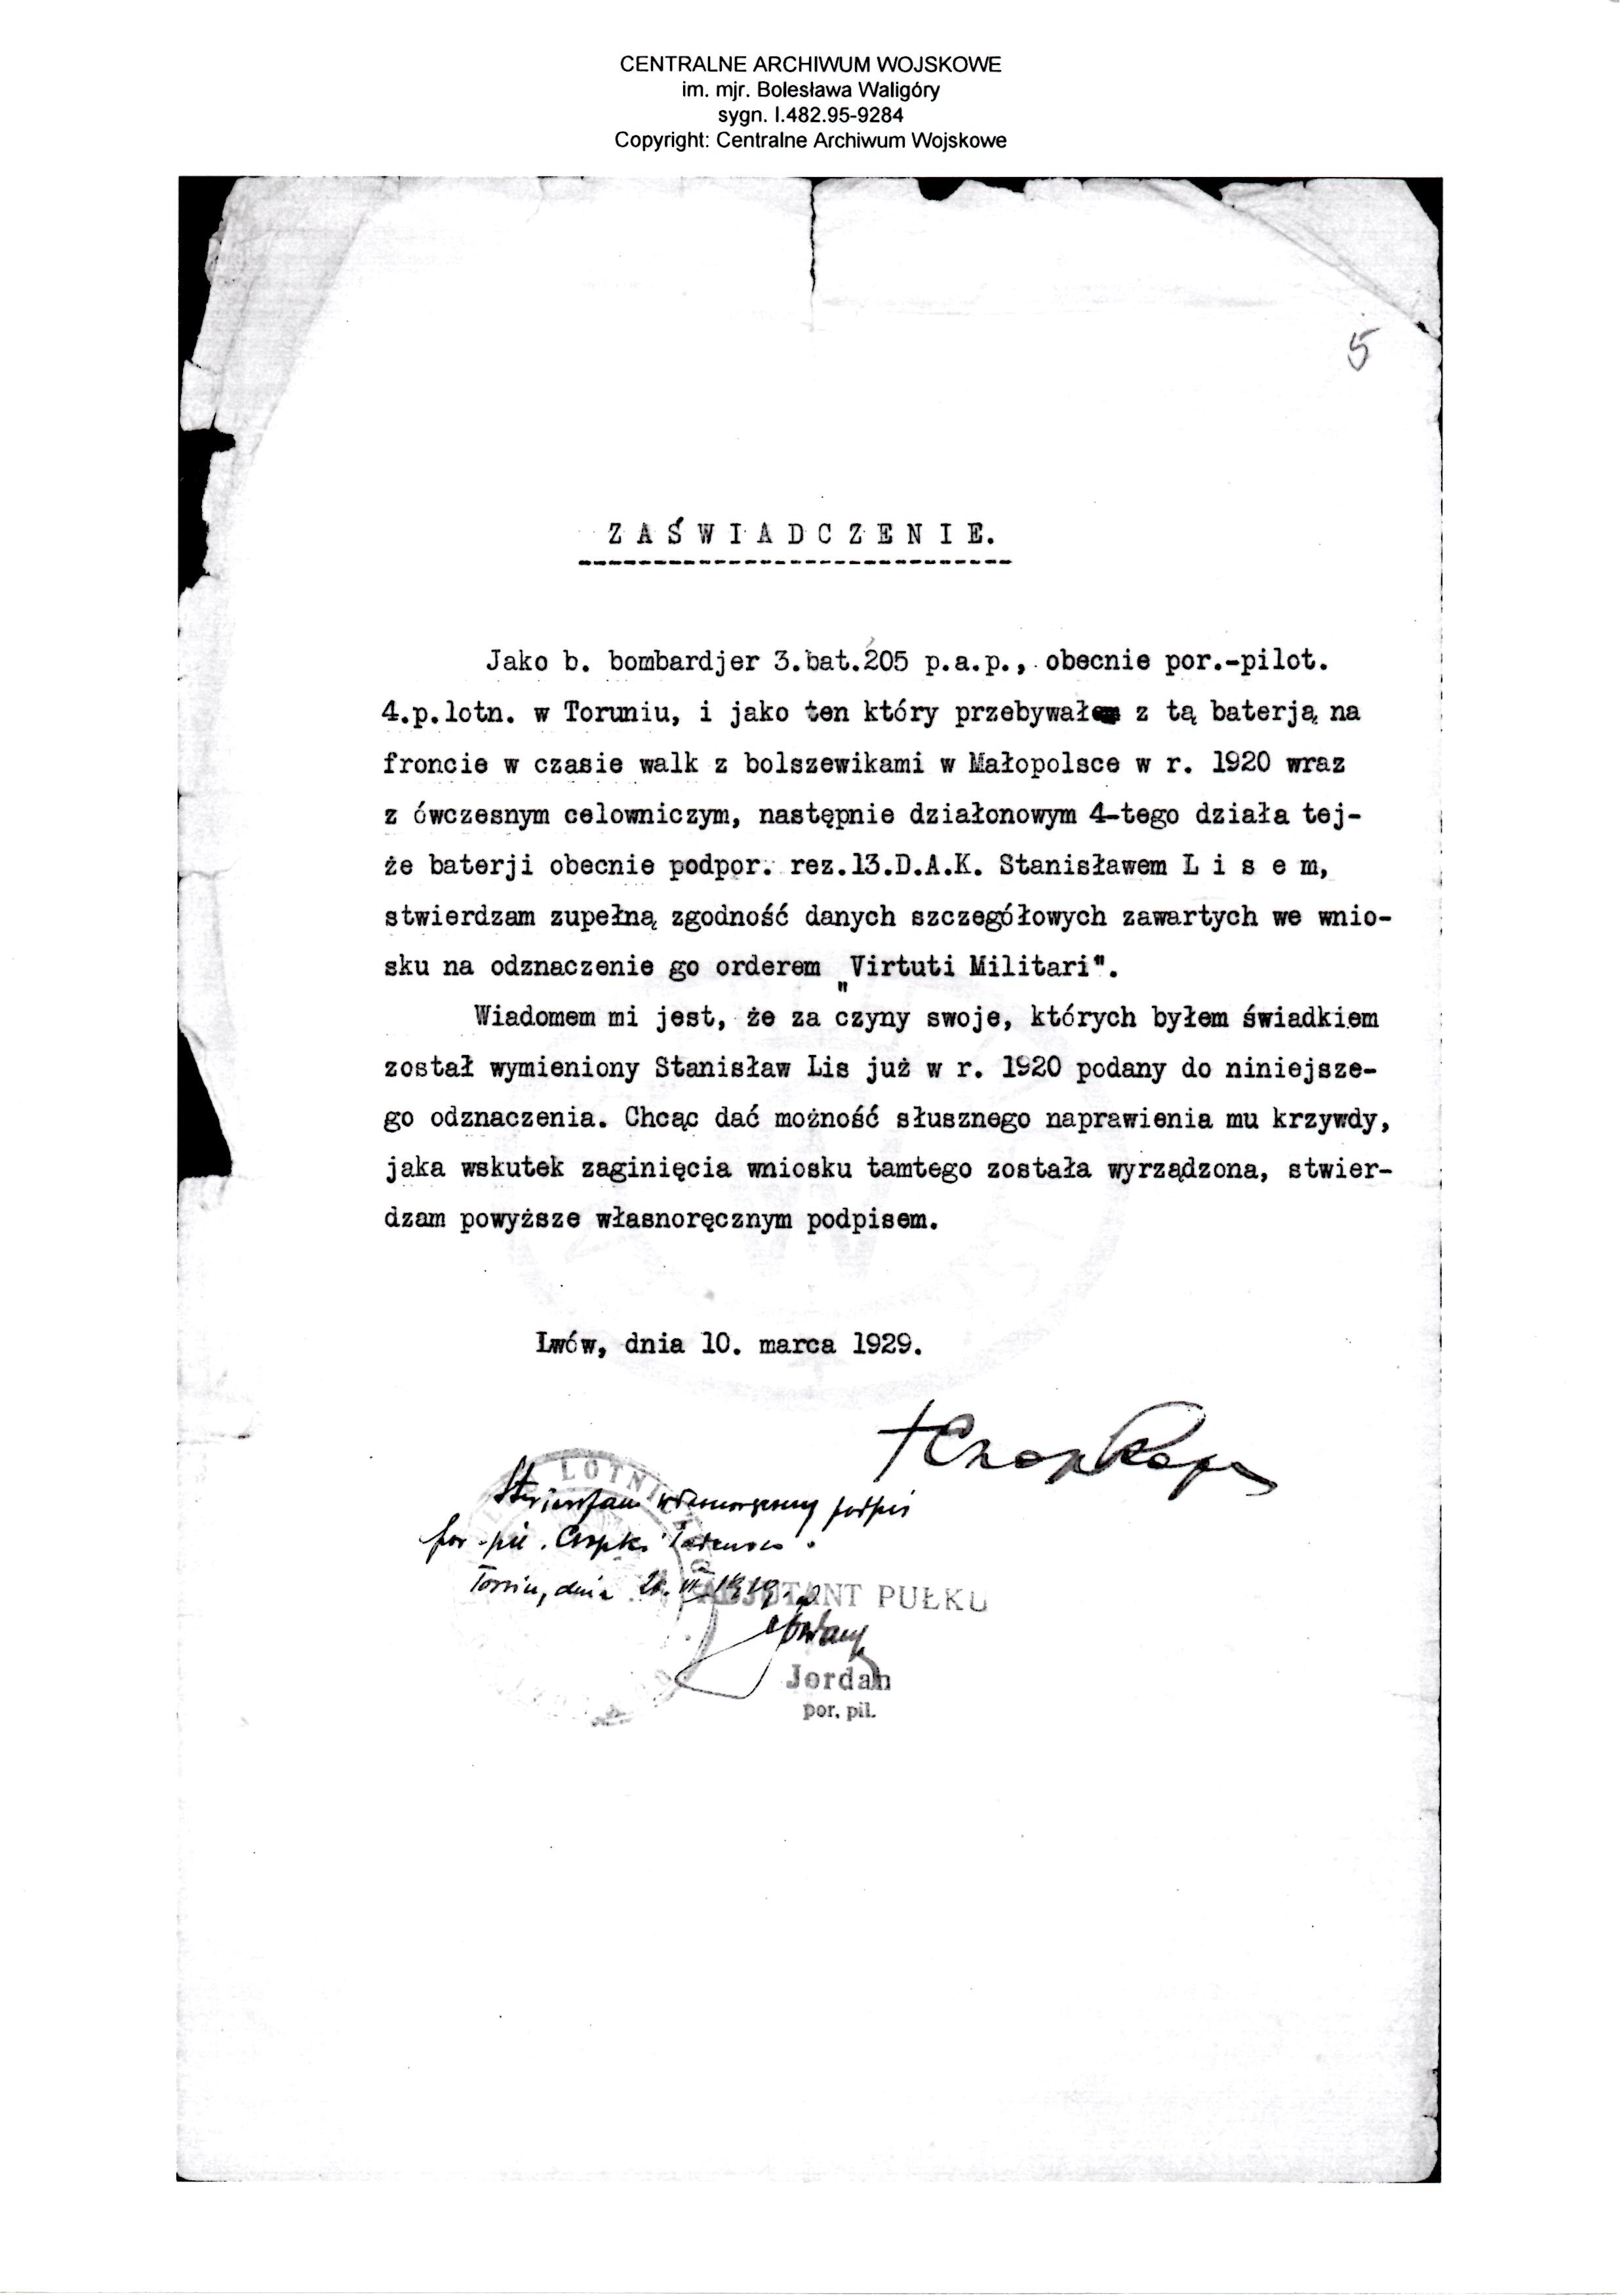 Virtuti Militari recommendation 10 march 1929.jpg